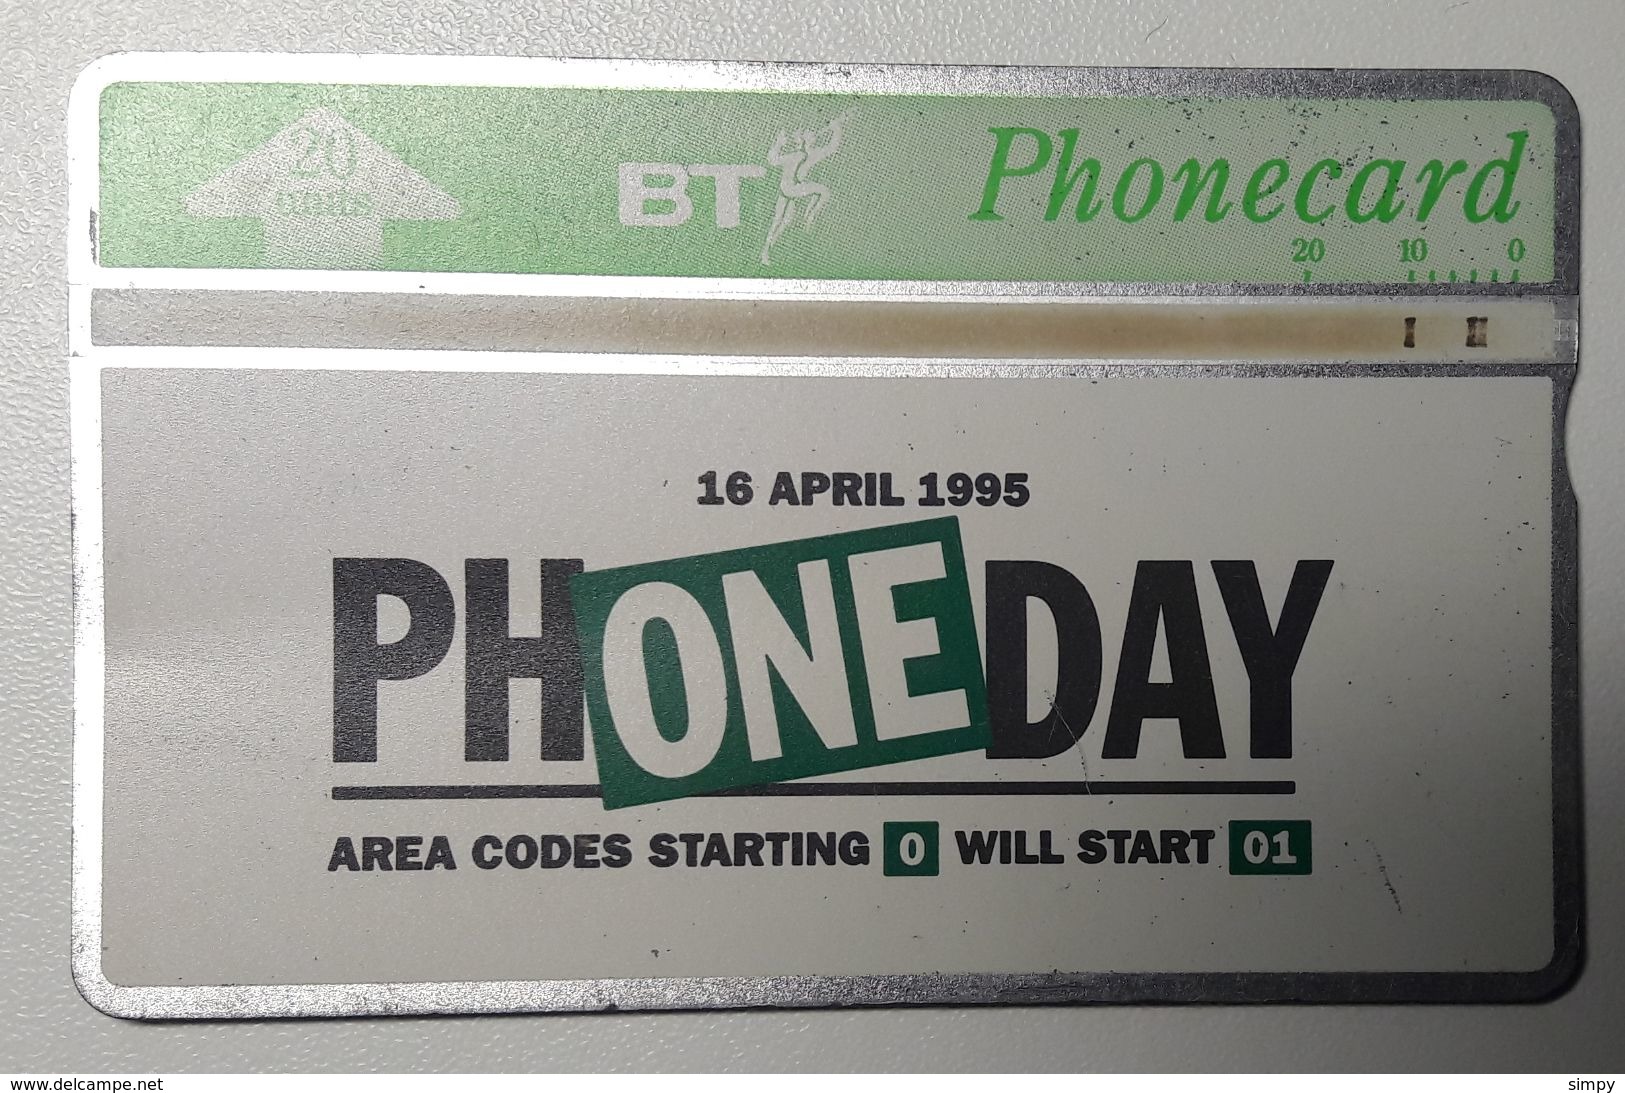 United Kingdom BT Phone Day 16.4.1995  Magnet Phone Card 20 Units - BT Cartes Mondiales (Prépayées)